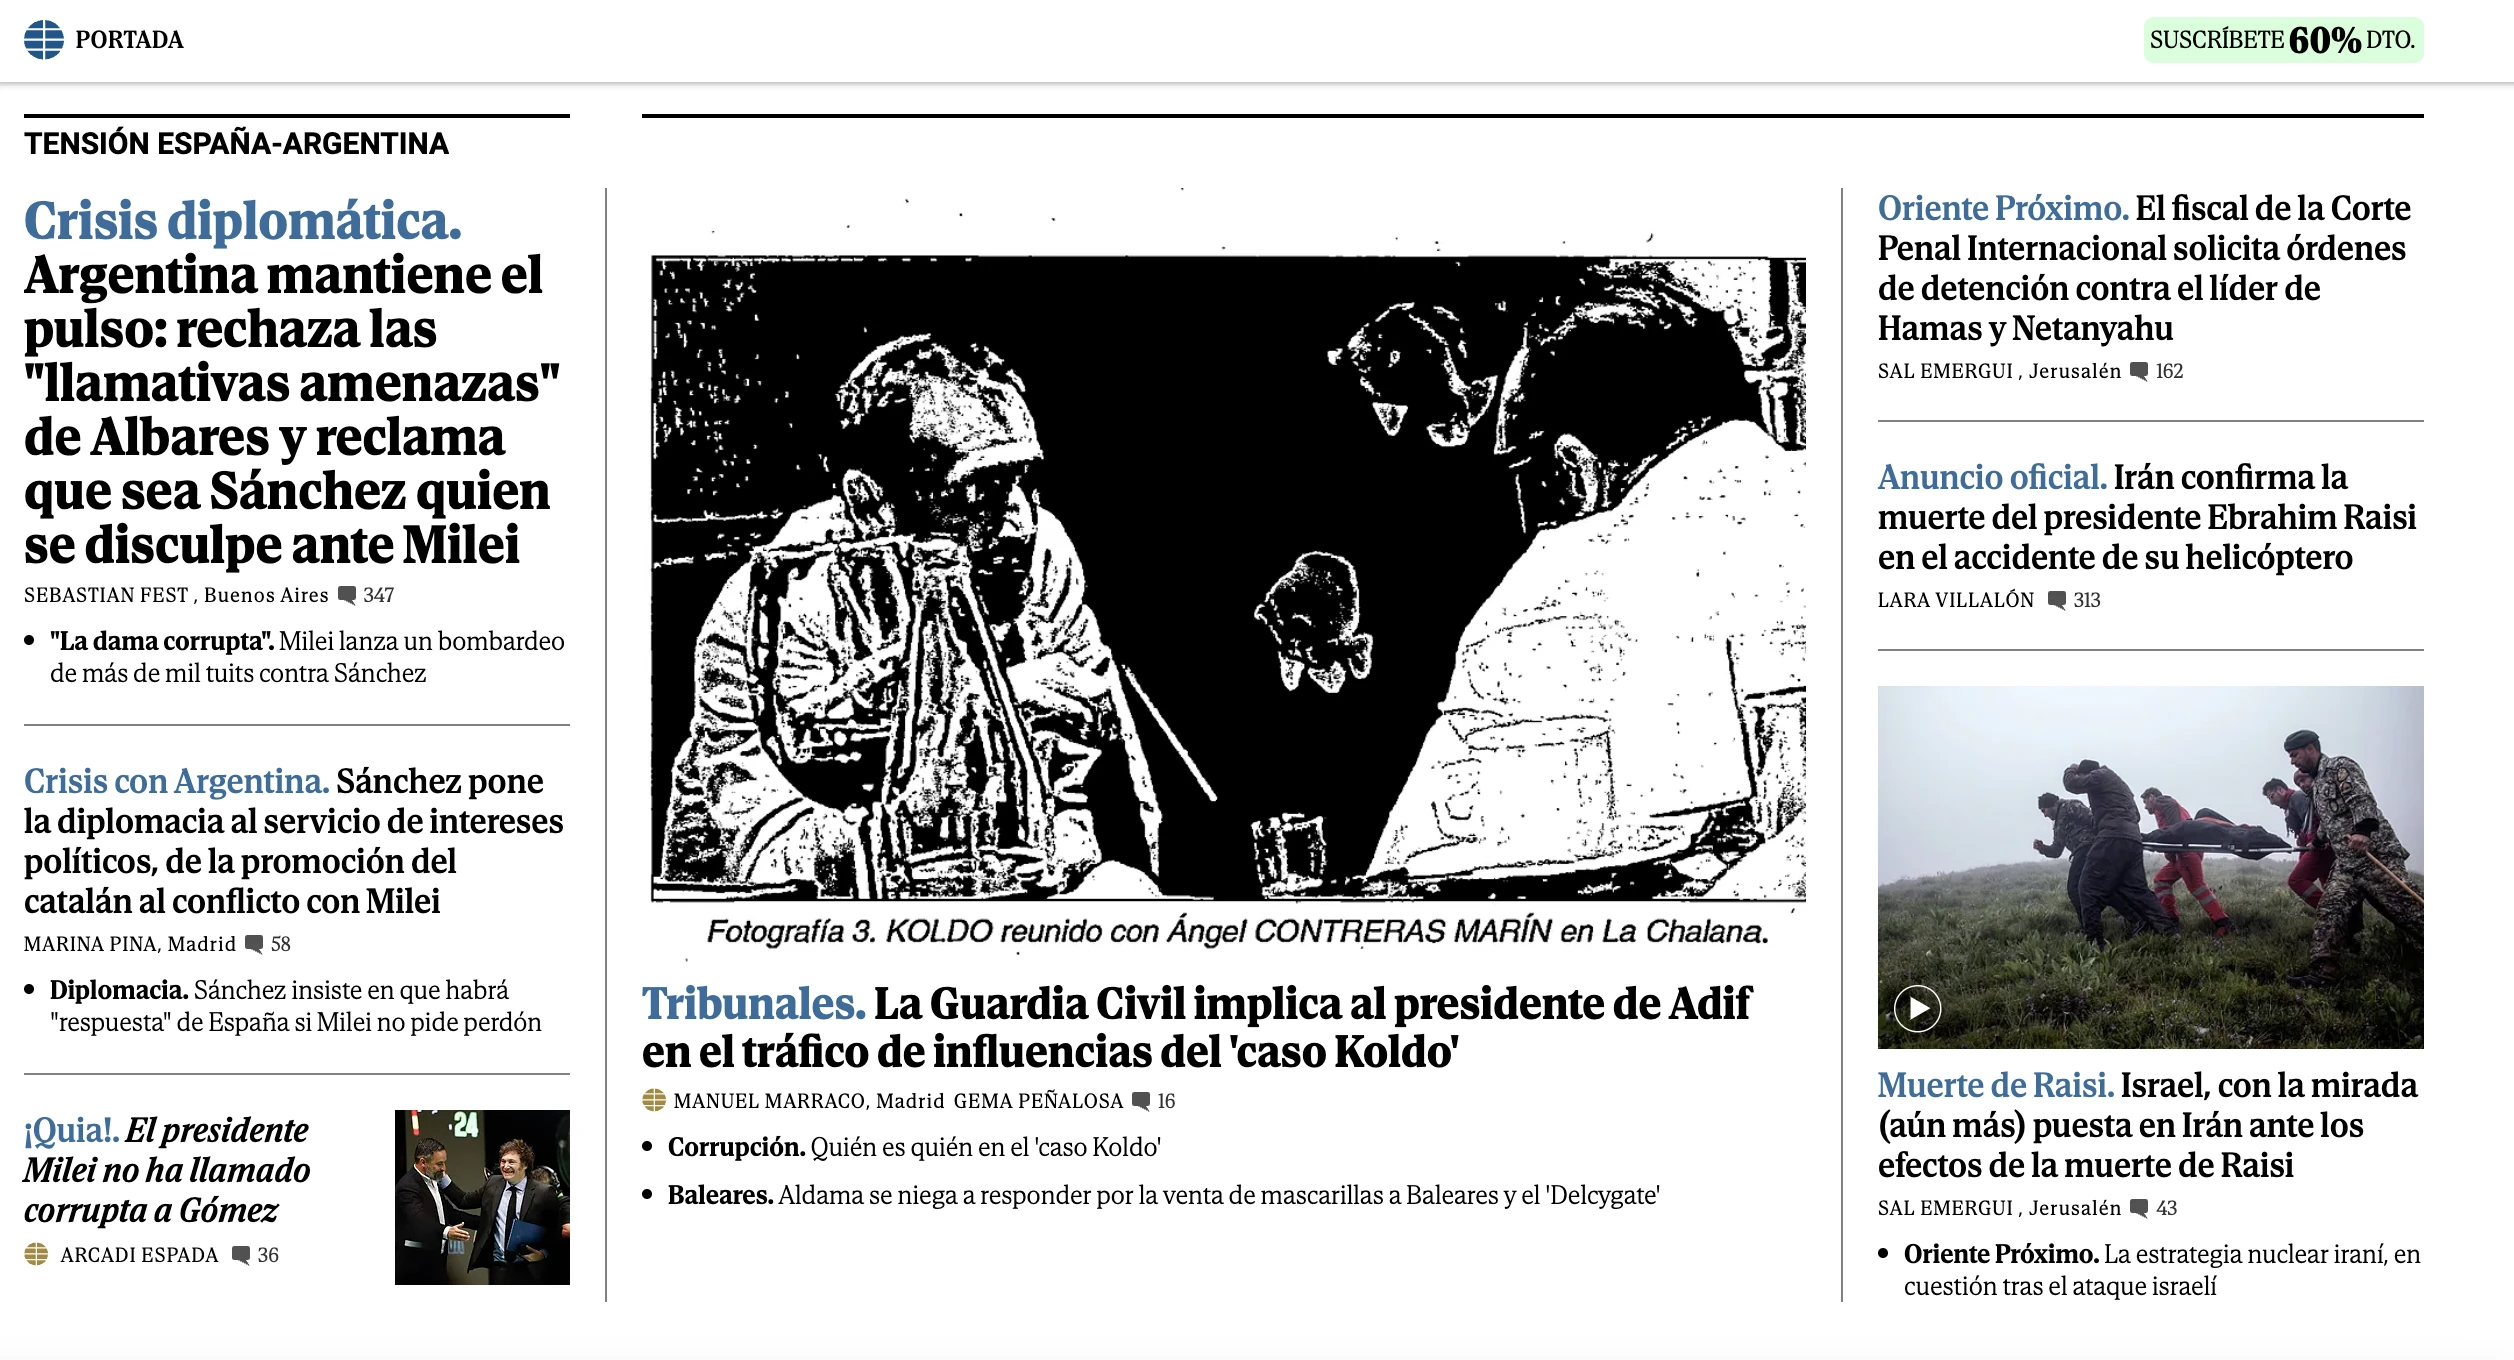 El Mundo destaca en su portada la "tensión diplomática entre Argentina y España".